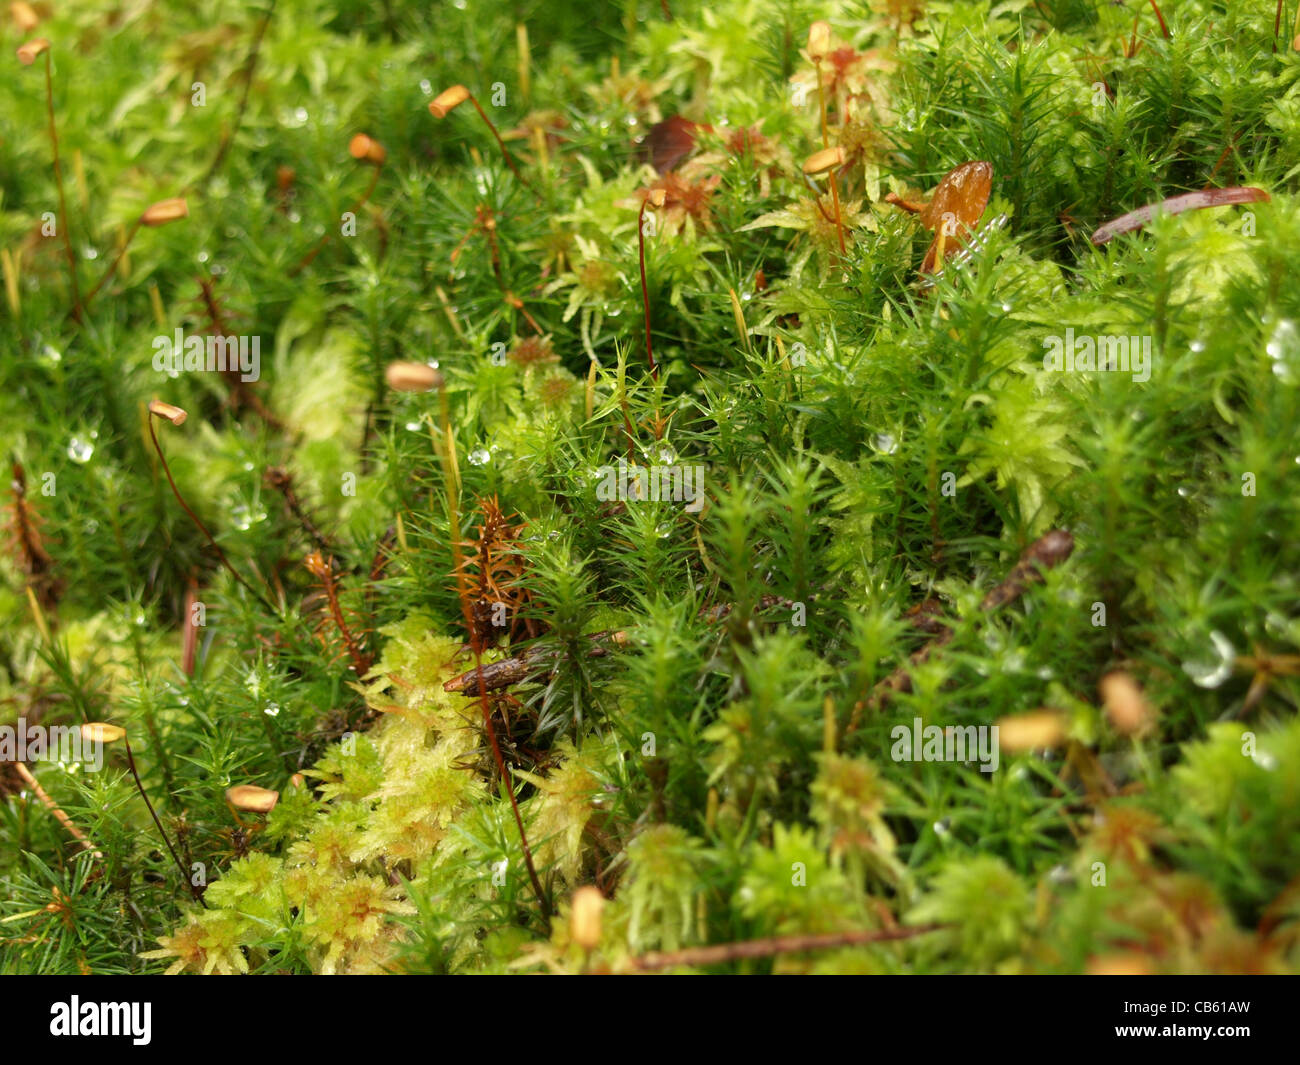 Peat moss / Sphagnum and Haircap moss / Polytrichum formosum / Torfmoos und Schönes Frauenhaarmoos / Schönes Widertonmoos Stock Photo